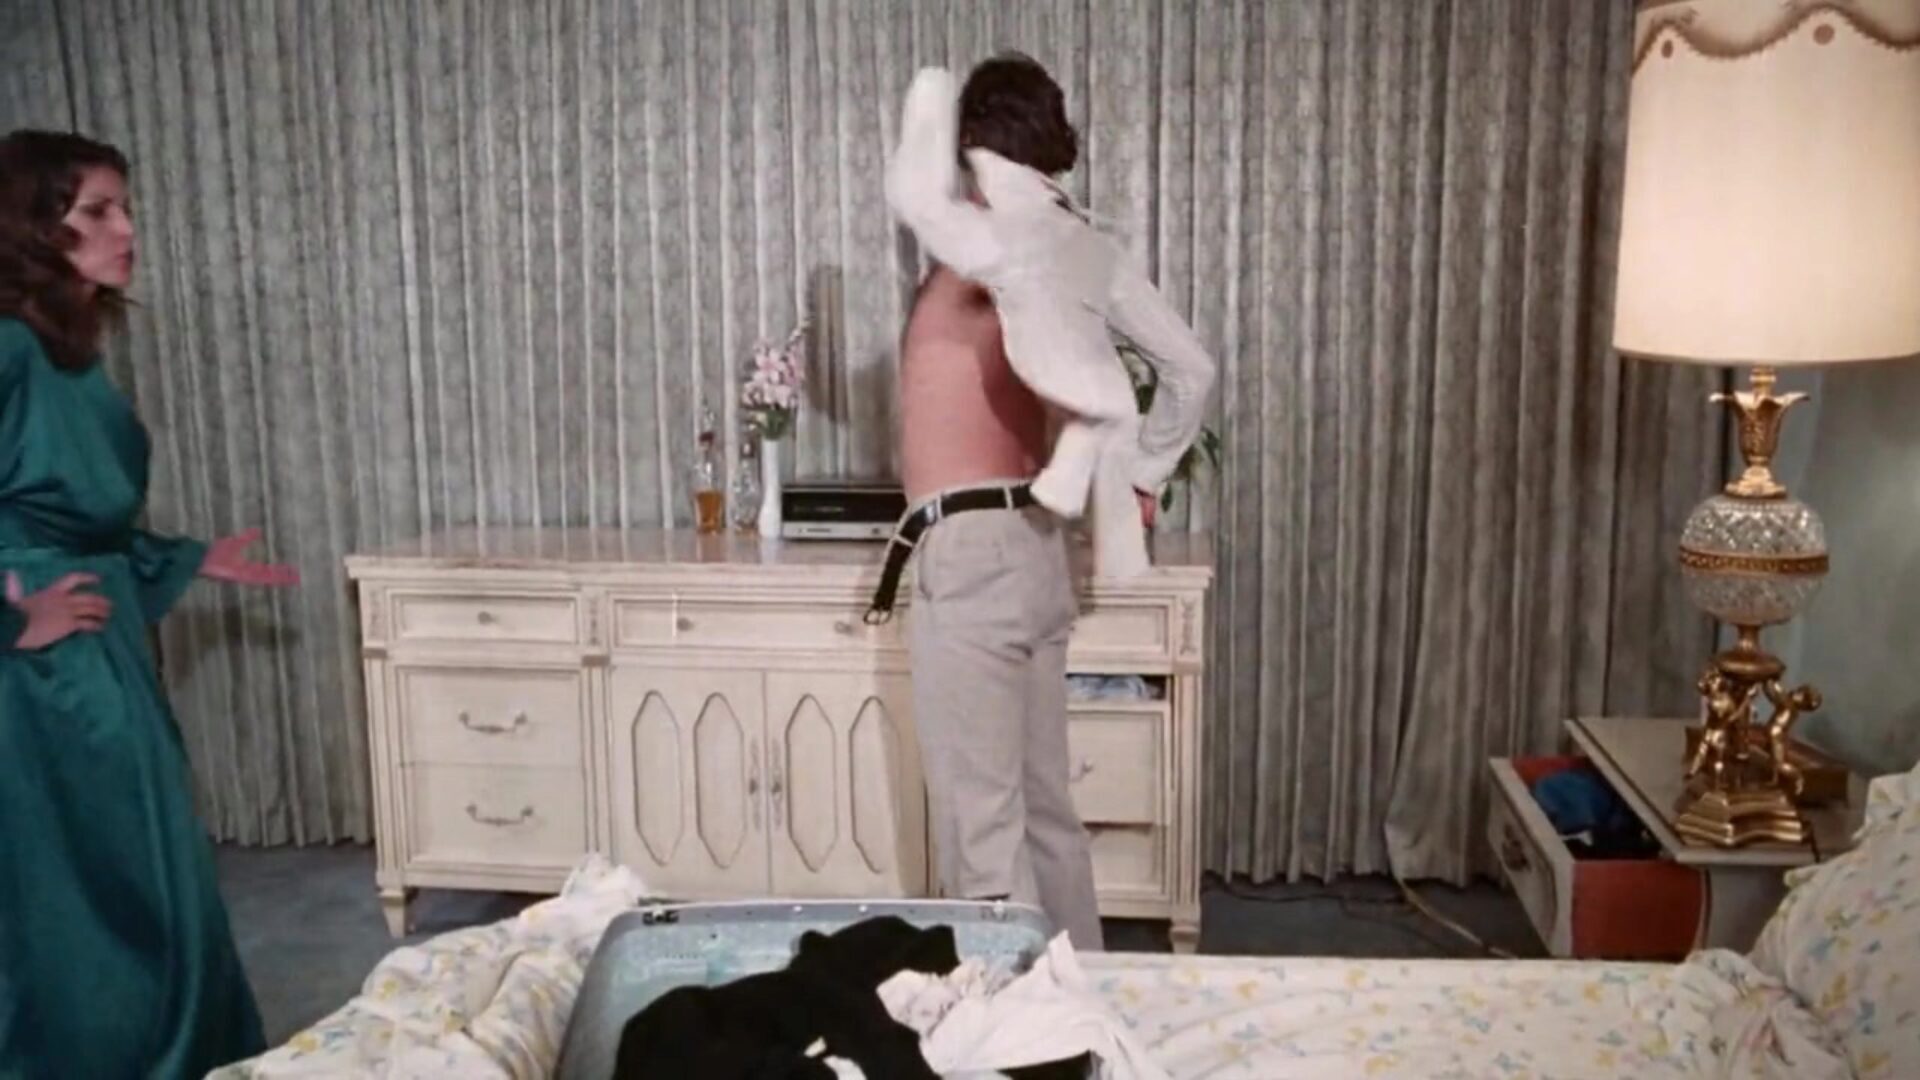 المحرمات (1980) - لا تزال أعلى دقة تم إعادة صياغتها 35 ملم ثمينة لأنها كانت قبل أكثر من ثلاثين عامًا من بطولة كاي باركر وأساطير أخرى في فيلم 35 ملم معاد تصنيعه. استمتع